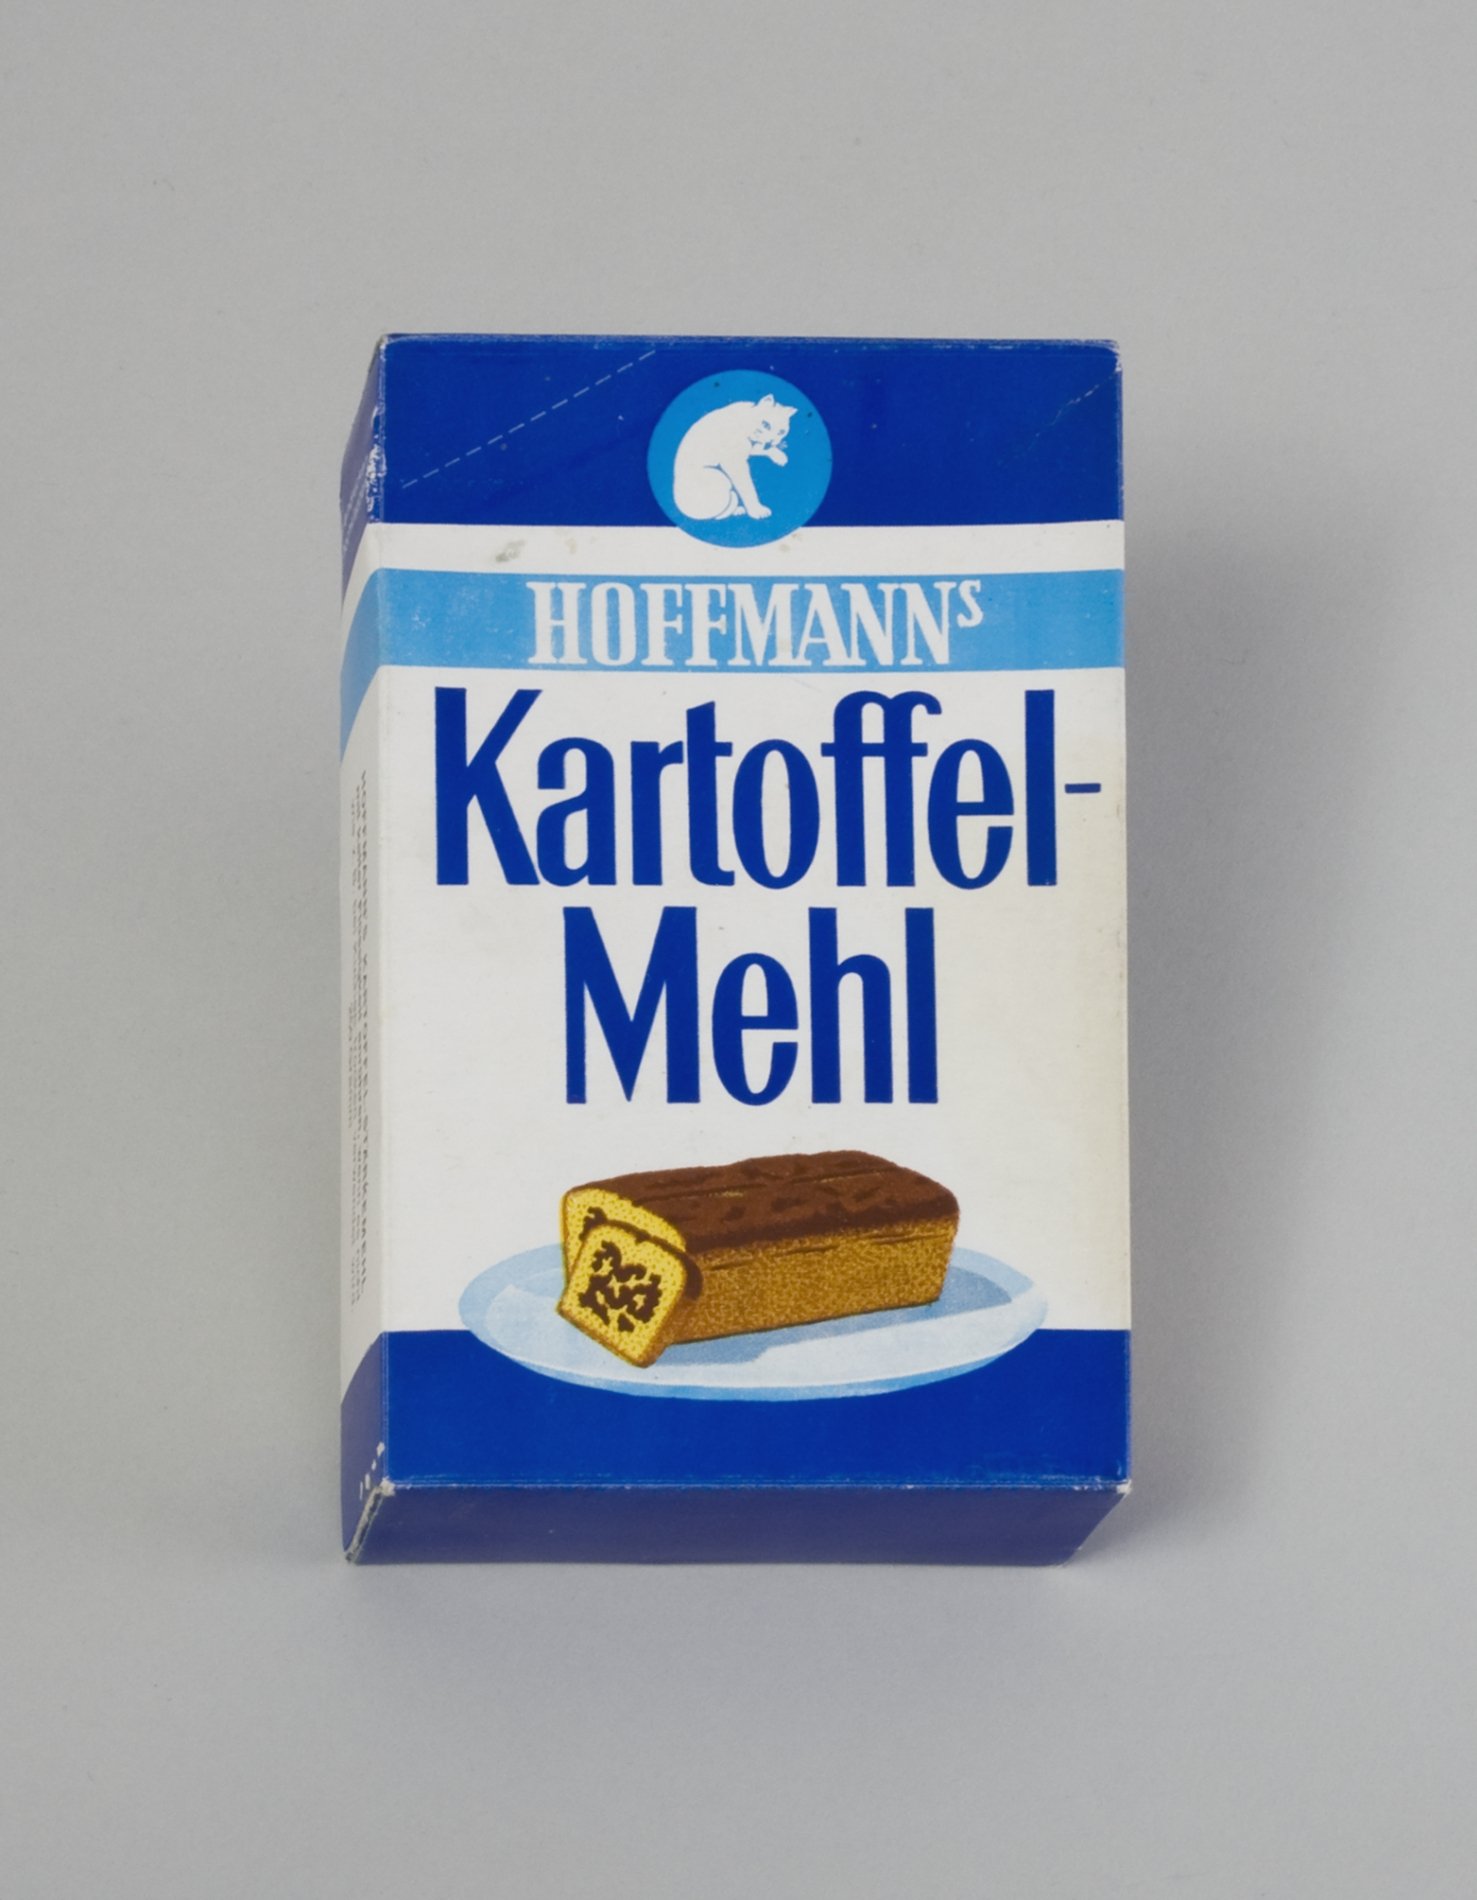 Verpackung "Hoffmann's Kartoffelmehl" (Stiftung Domäne Dahlem - Landgut und Museum, Weiternutzung nur mit Genehmigung des Museums CC BY-NC-SA)